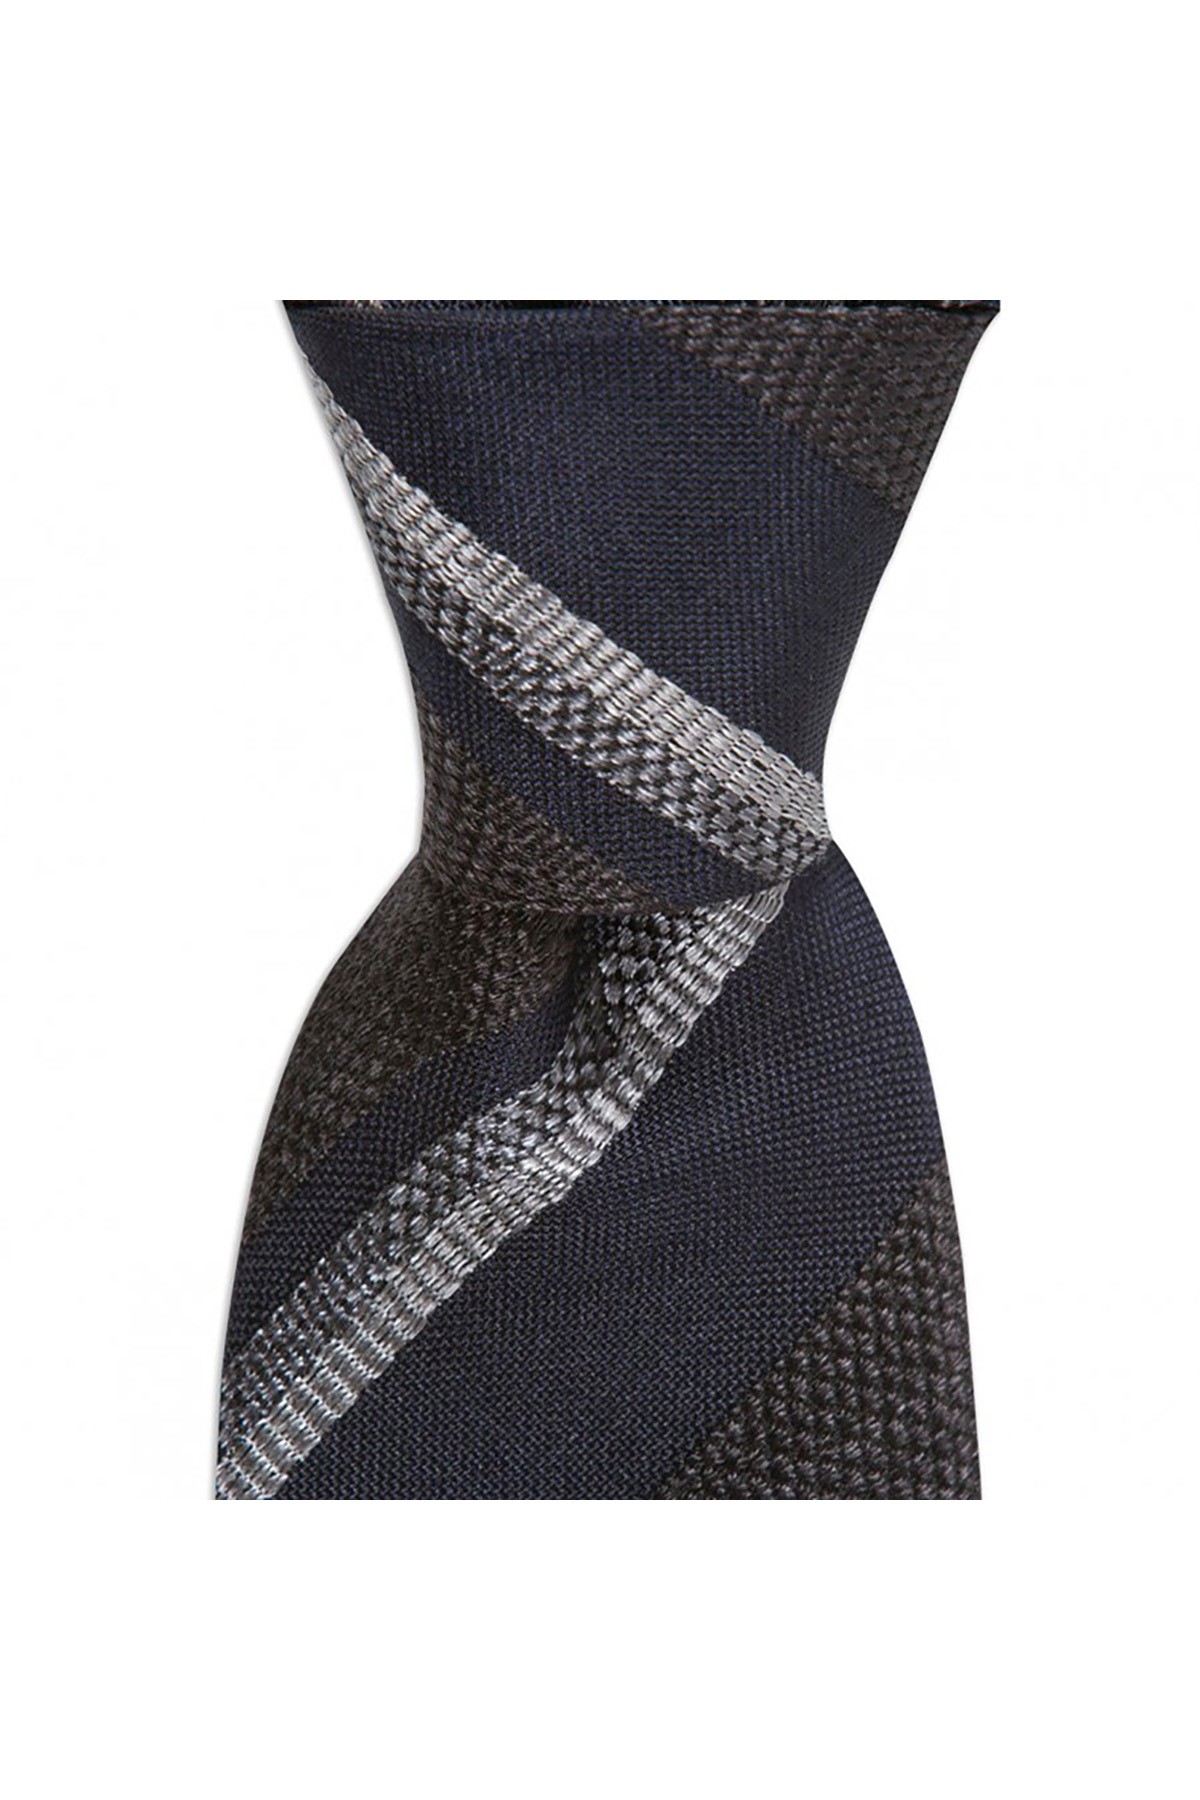 Desenli 8 cm genişliğinde yün ipek karışımlı kravat - Lacivert